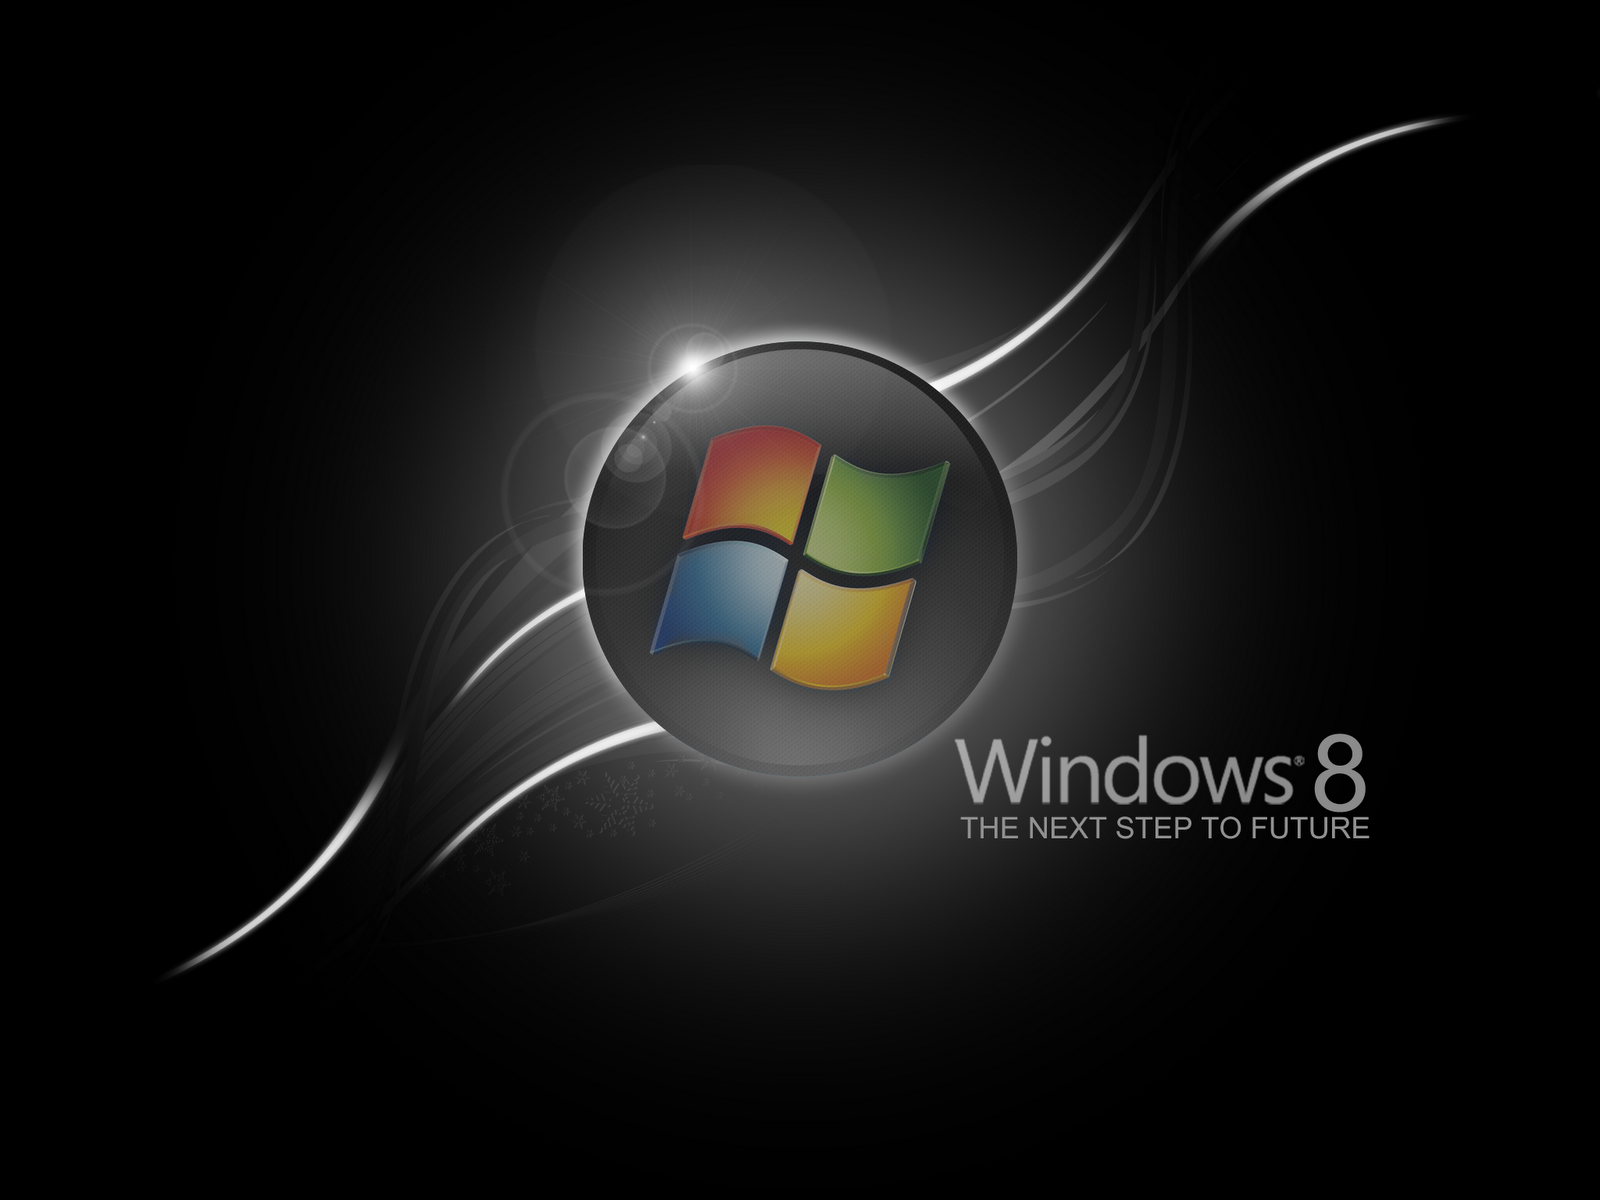 50+] Windows 8 HD Wallpaper Pack - WallpaperSafari